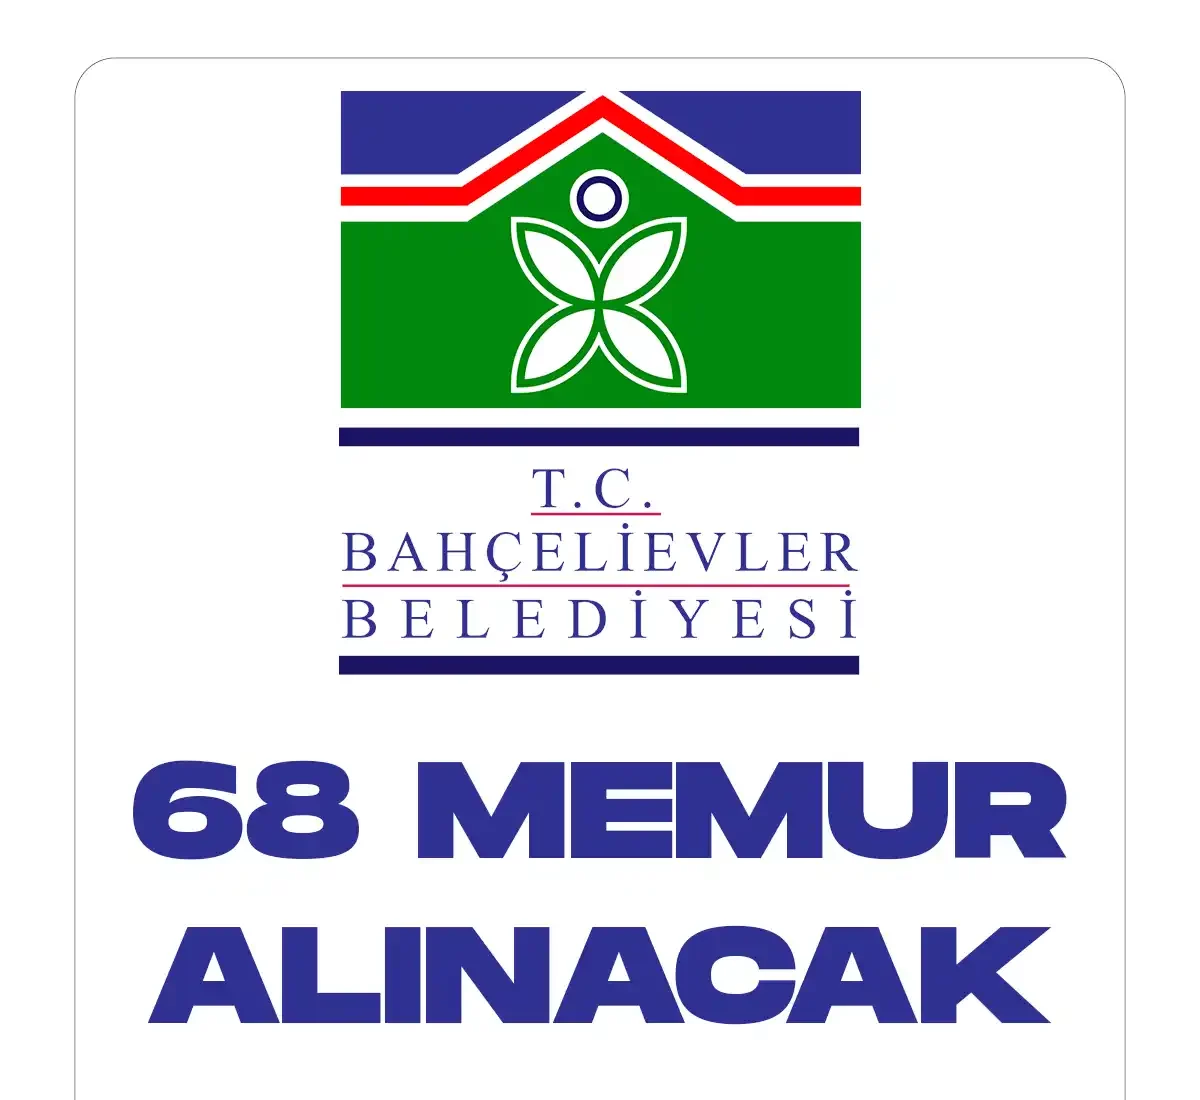 İstanbul Bahçelievler Belediyesi 68 memur alımı yapacak. Belediyenin memur alımları yapacağına ilişkin resmi duyuru bugün Cumhurbaşkanlığı SBB tarafından yayımlandı.